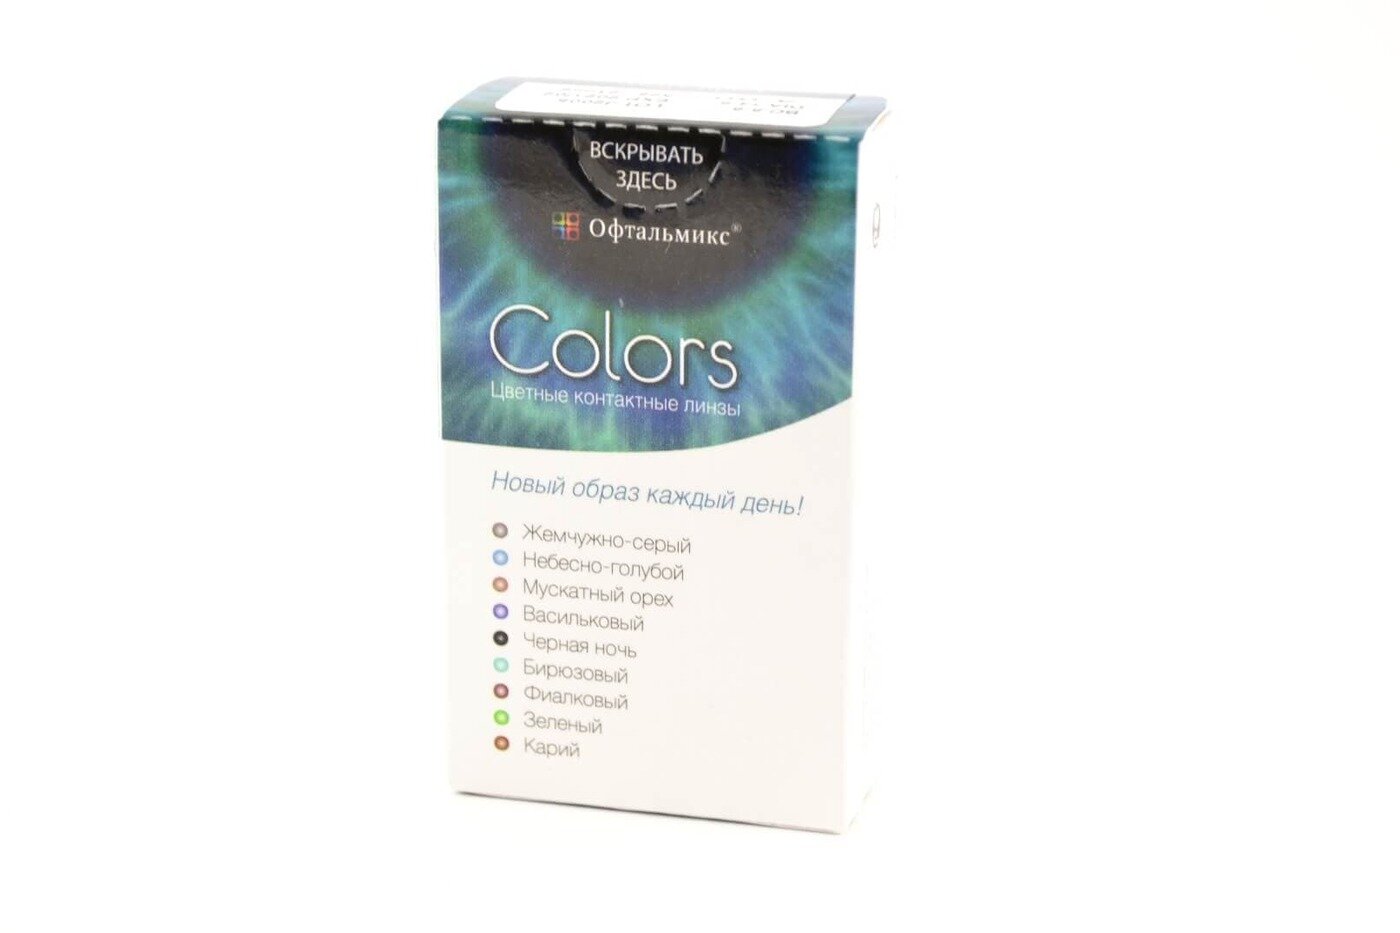 Офтальмикс Colors New (2 линзы)-1.50 R.8.6 Sky(Небесно-голубой)